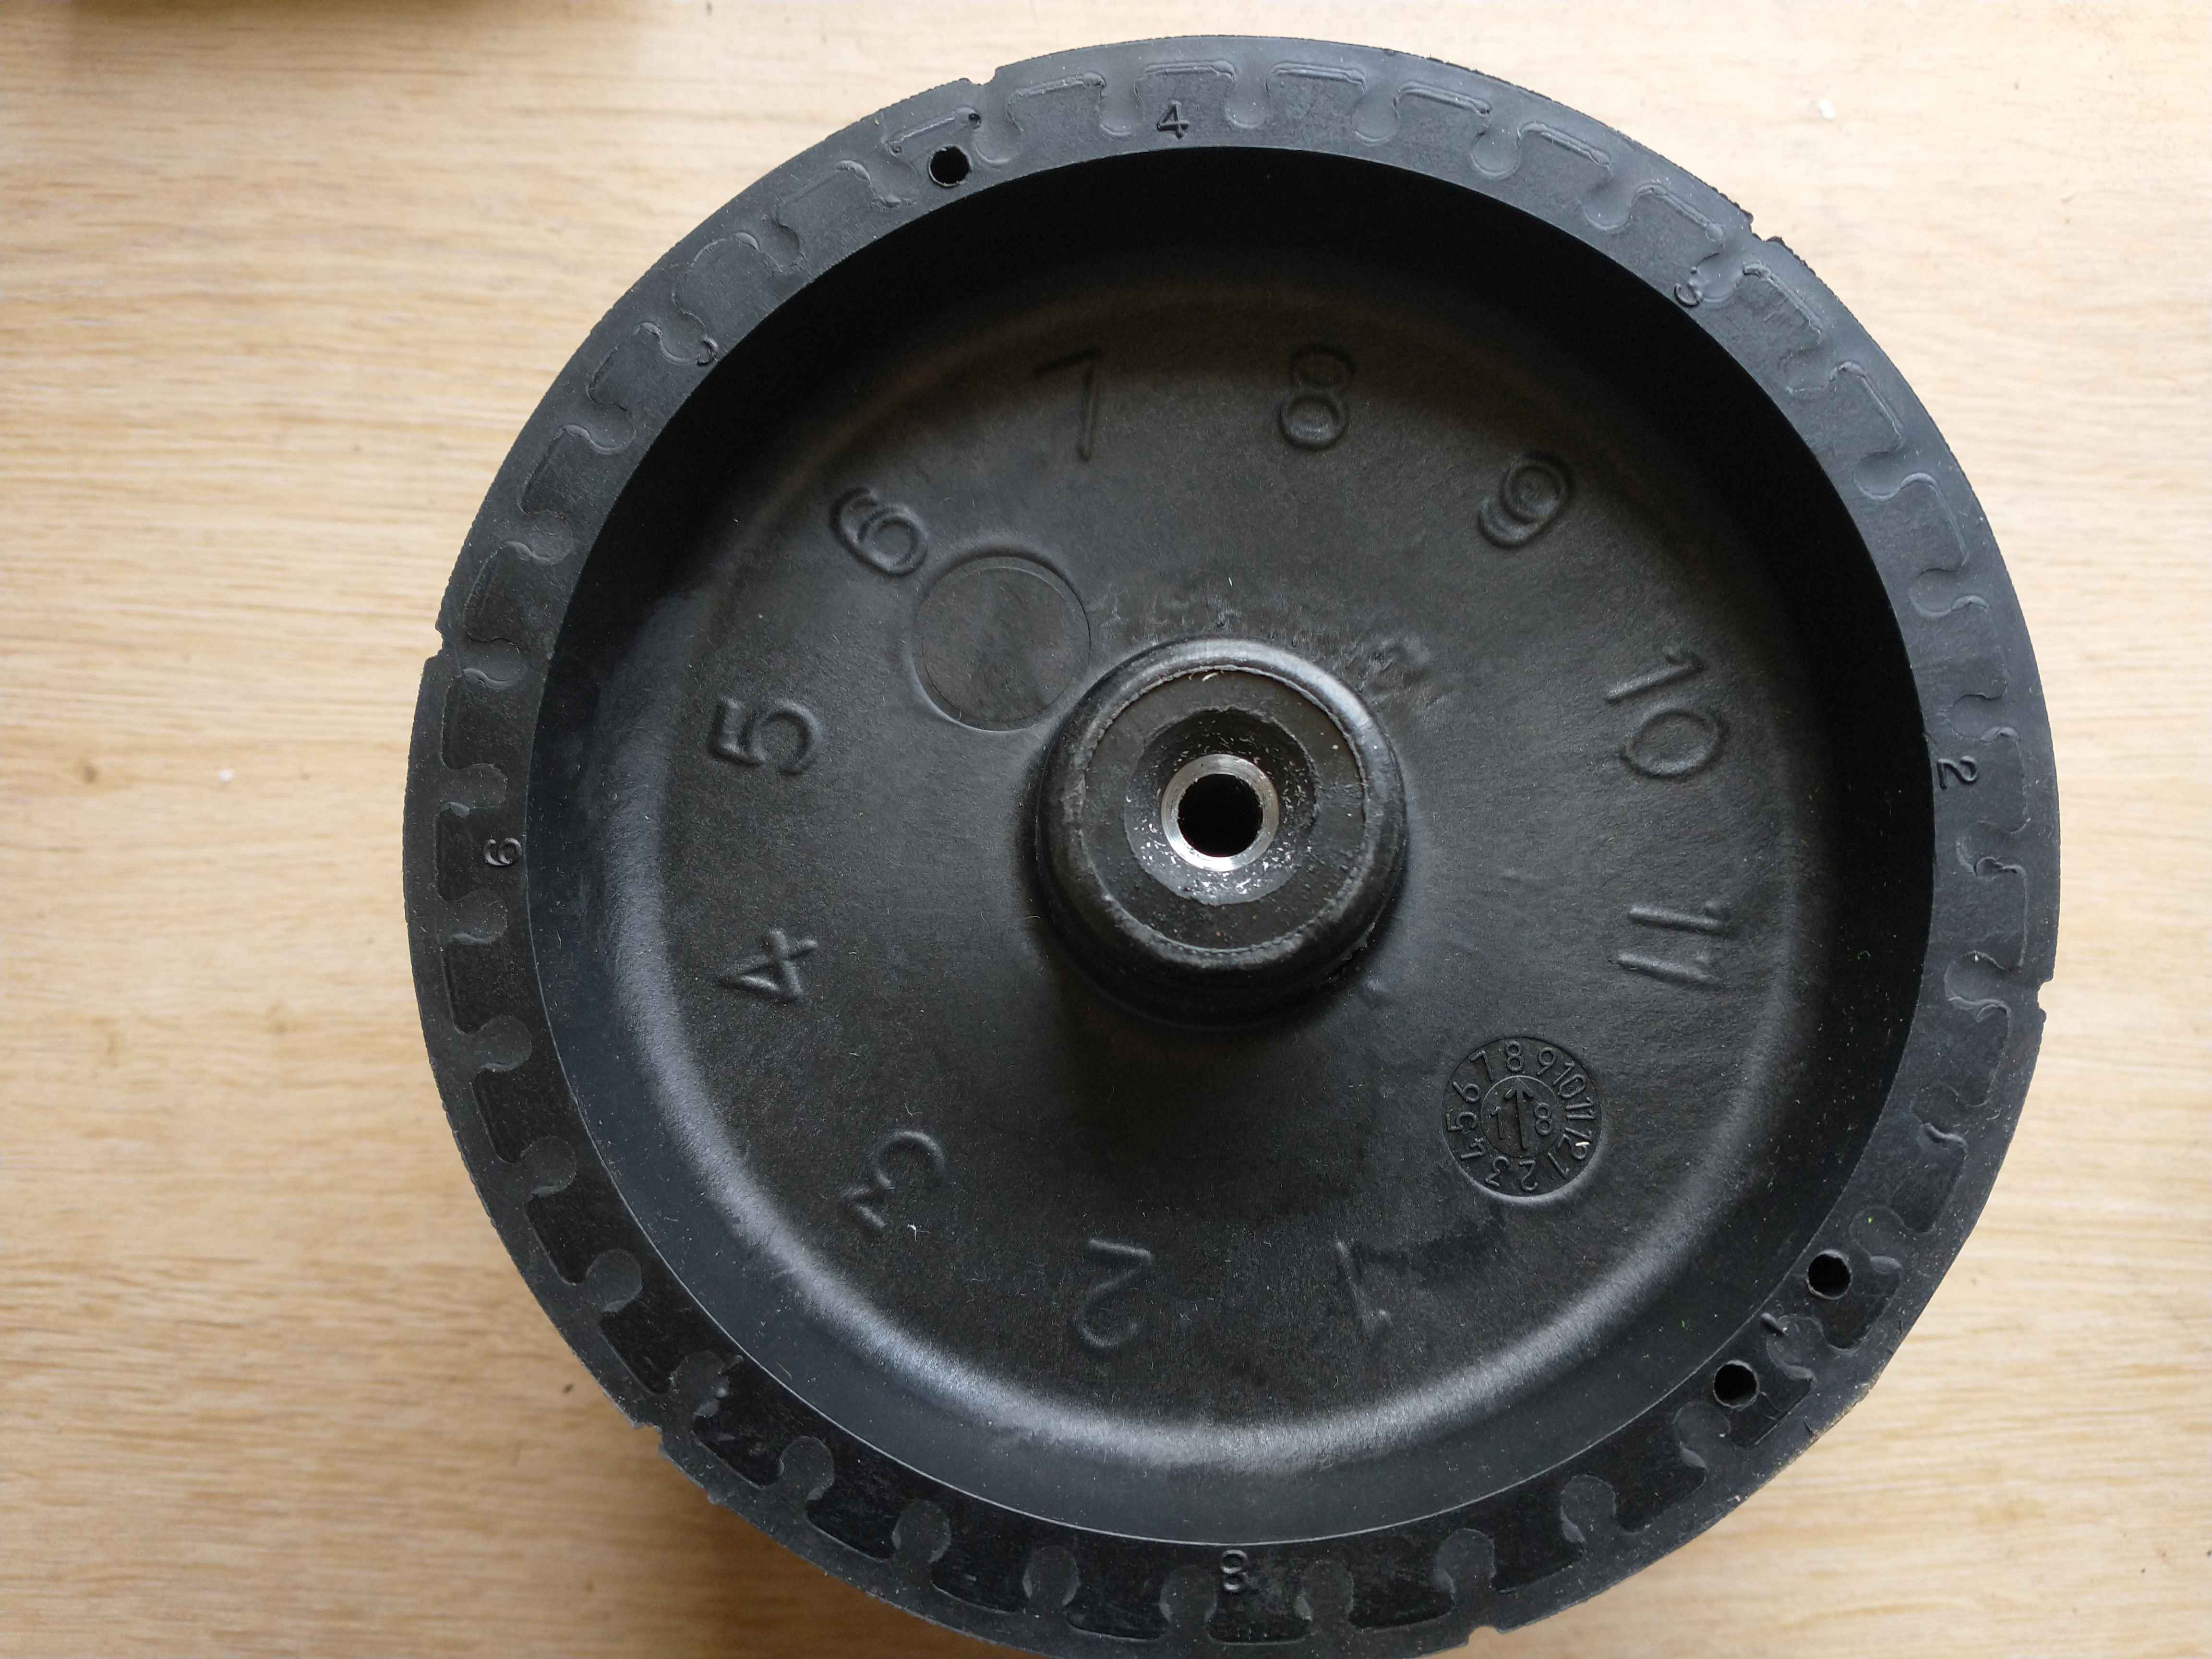 Ballmachine Accessories: Tutor ProLite Throwing Wheel